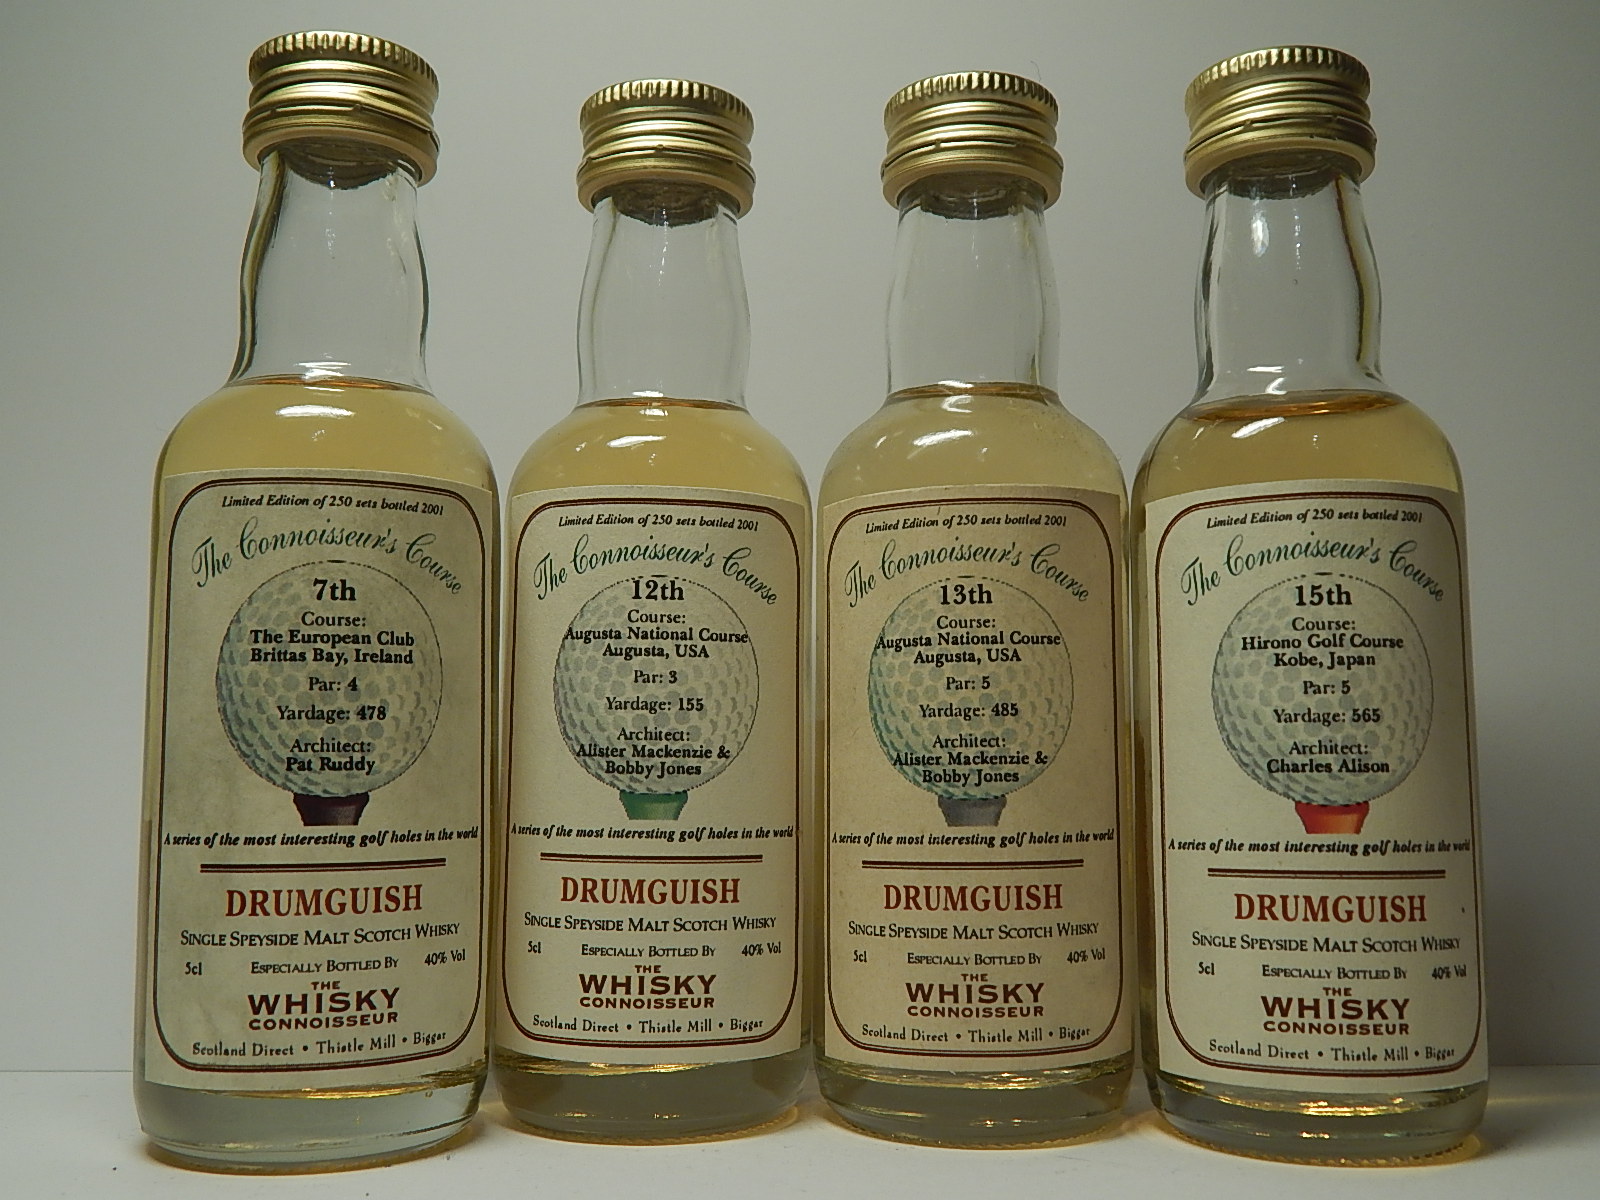 DRUMGUISH SSMSW 2001 "Whisky Connoisseur" 5cl 40%Vol